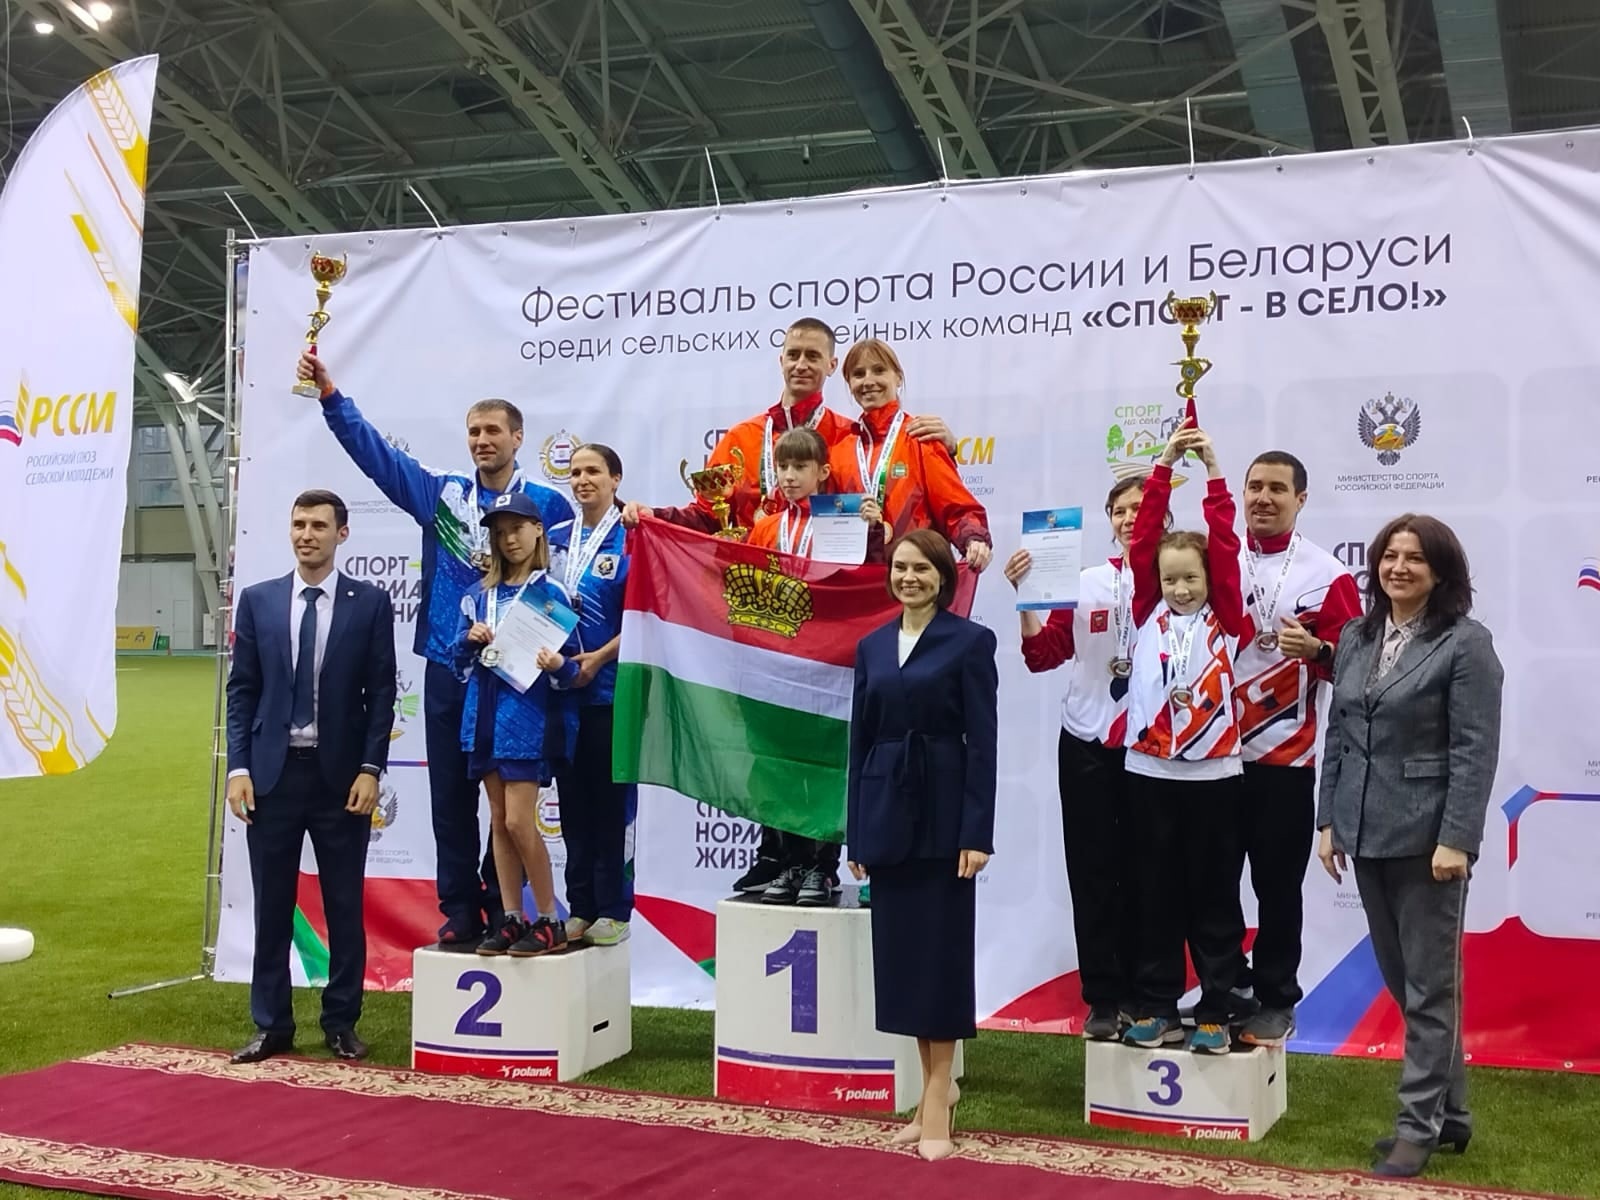 Наши чемпионы! В минувшие выходные завершился Фестиваль спорта России и Беларуси среди семейных команд .